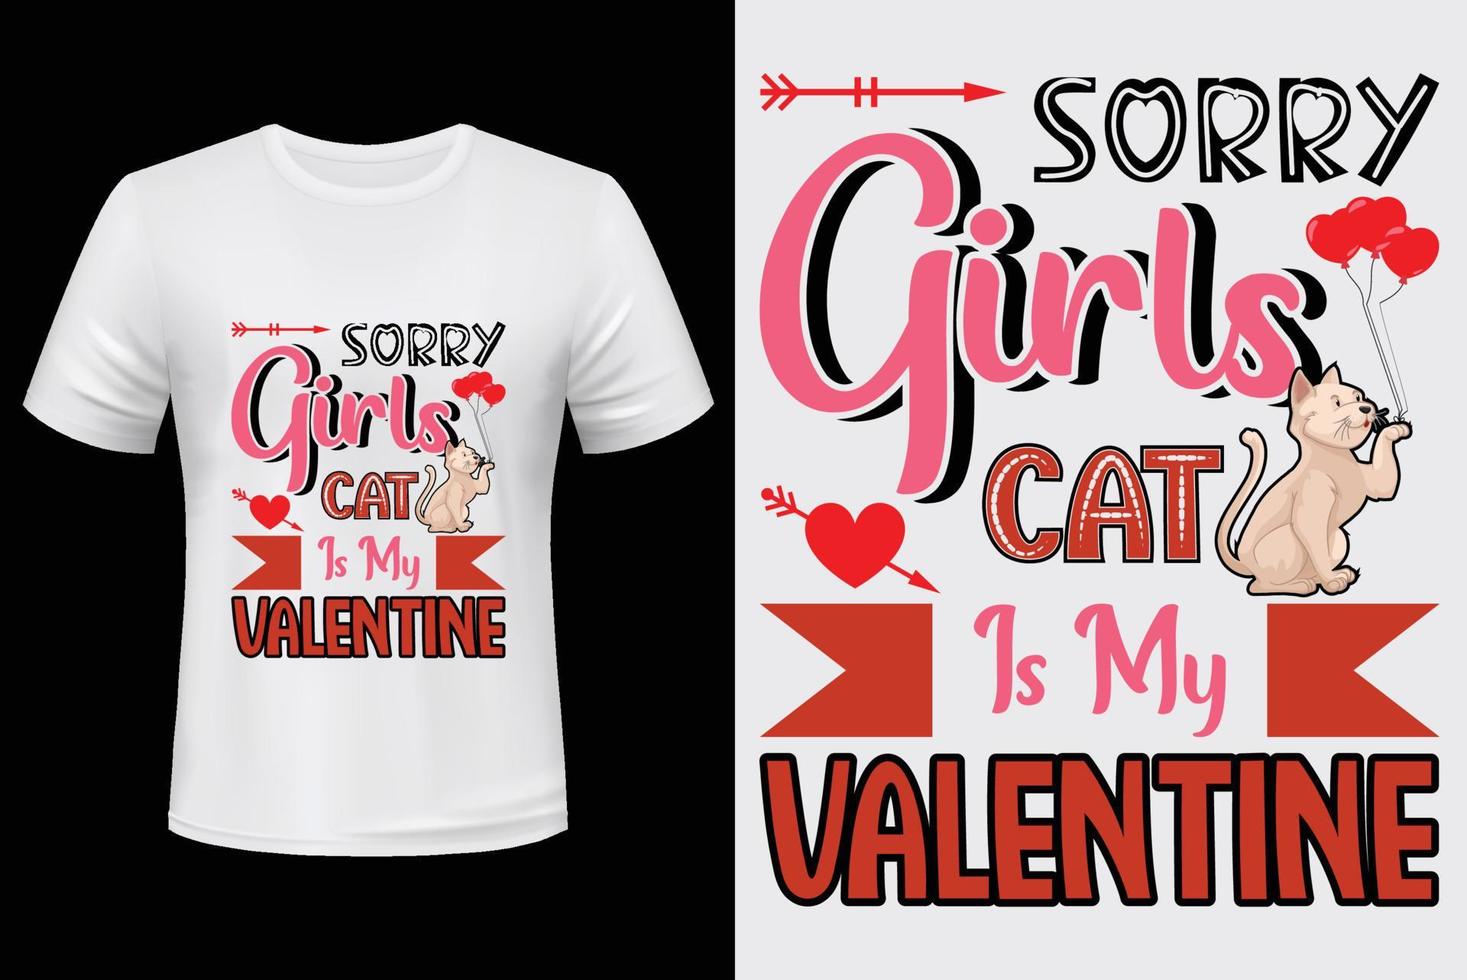 förlåt flickor katt är min alla hjärtans dag. t-shirt design för hjärtans dag vektor